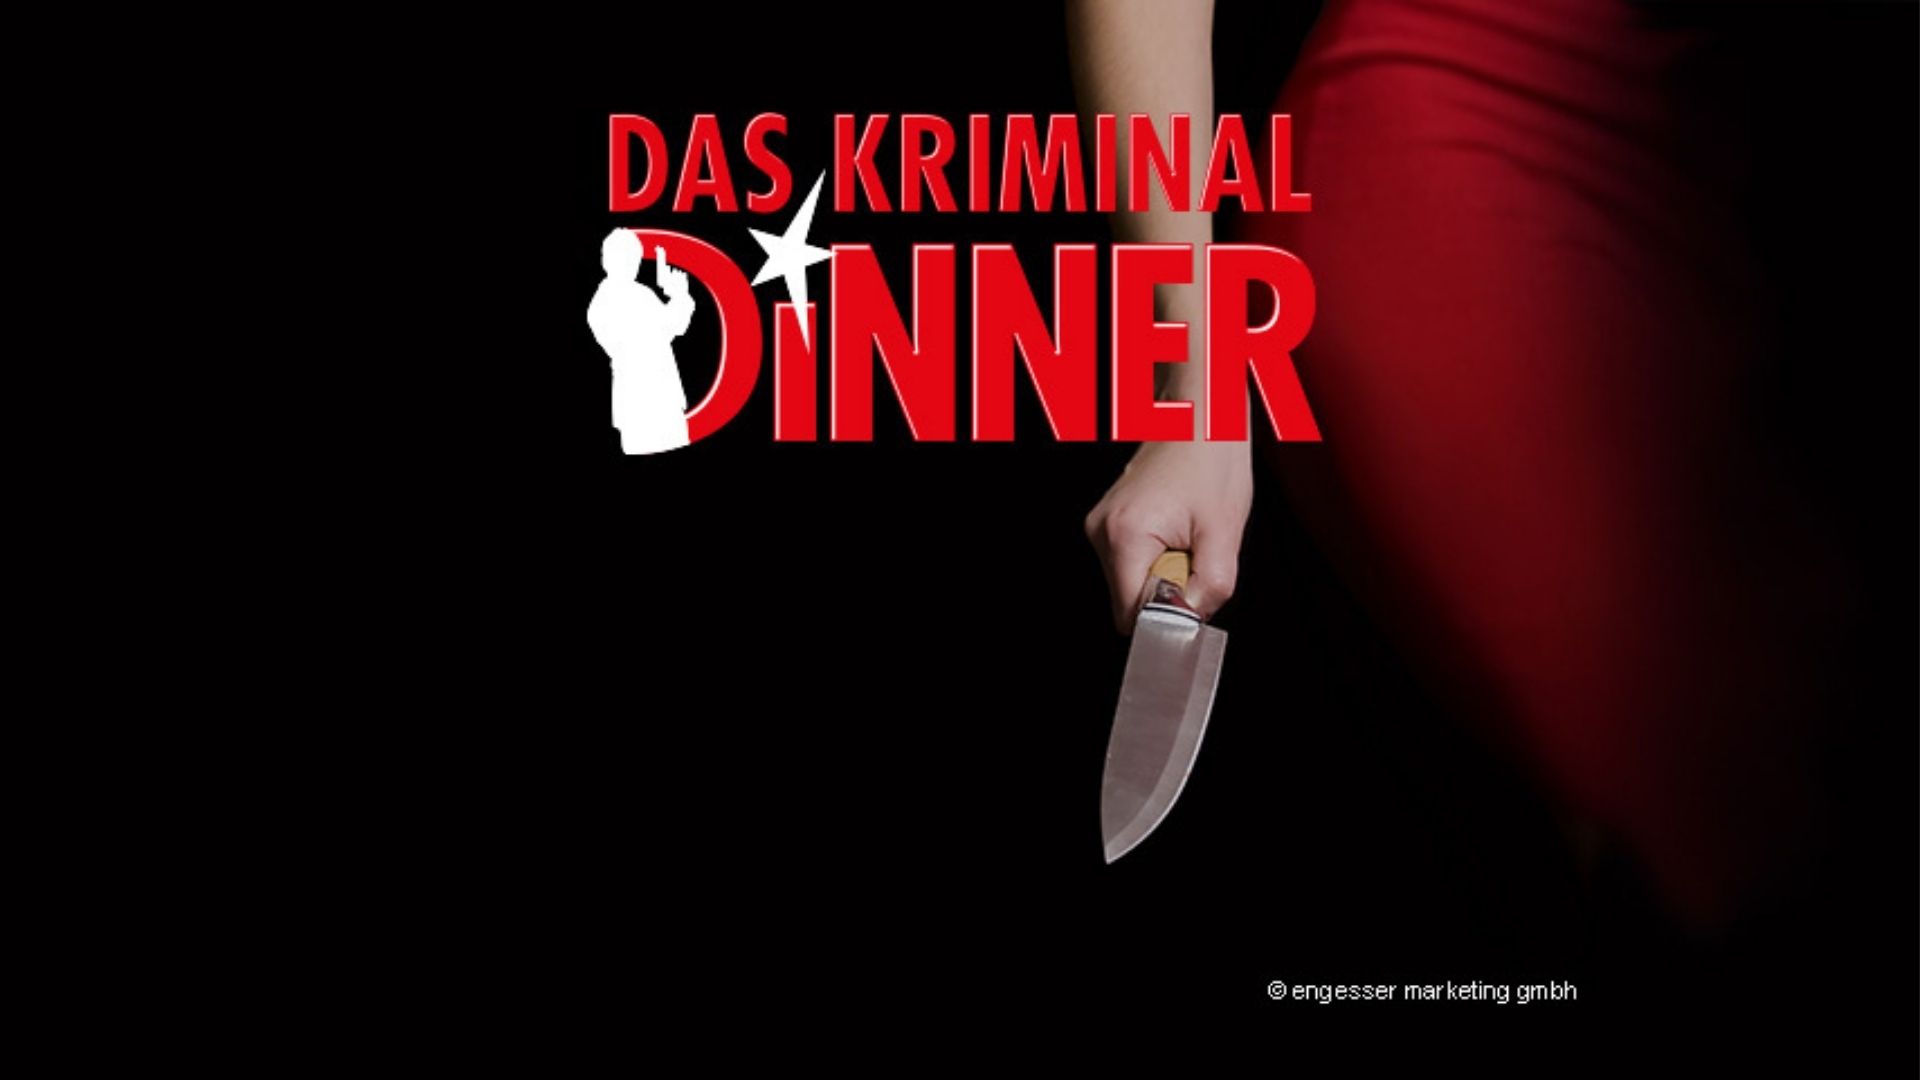 Das Kriminal Dinner